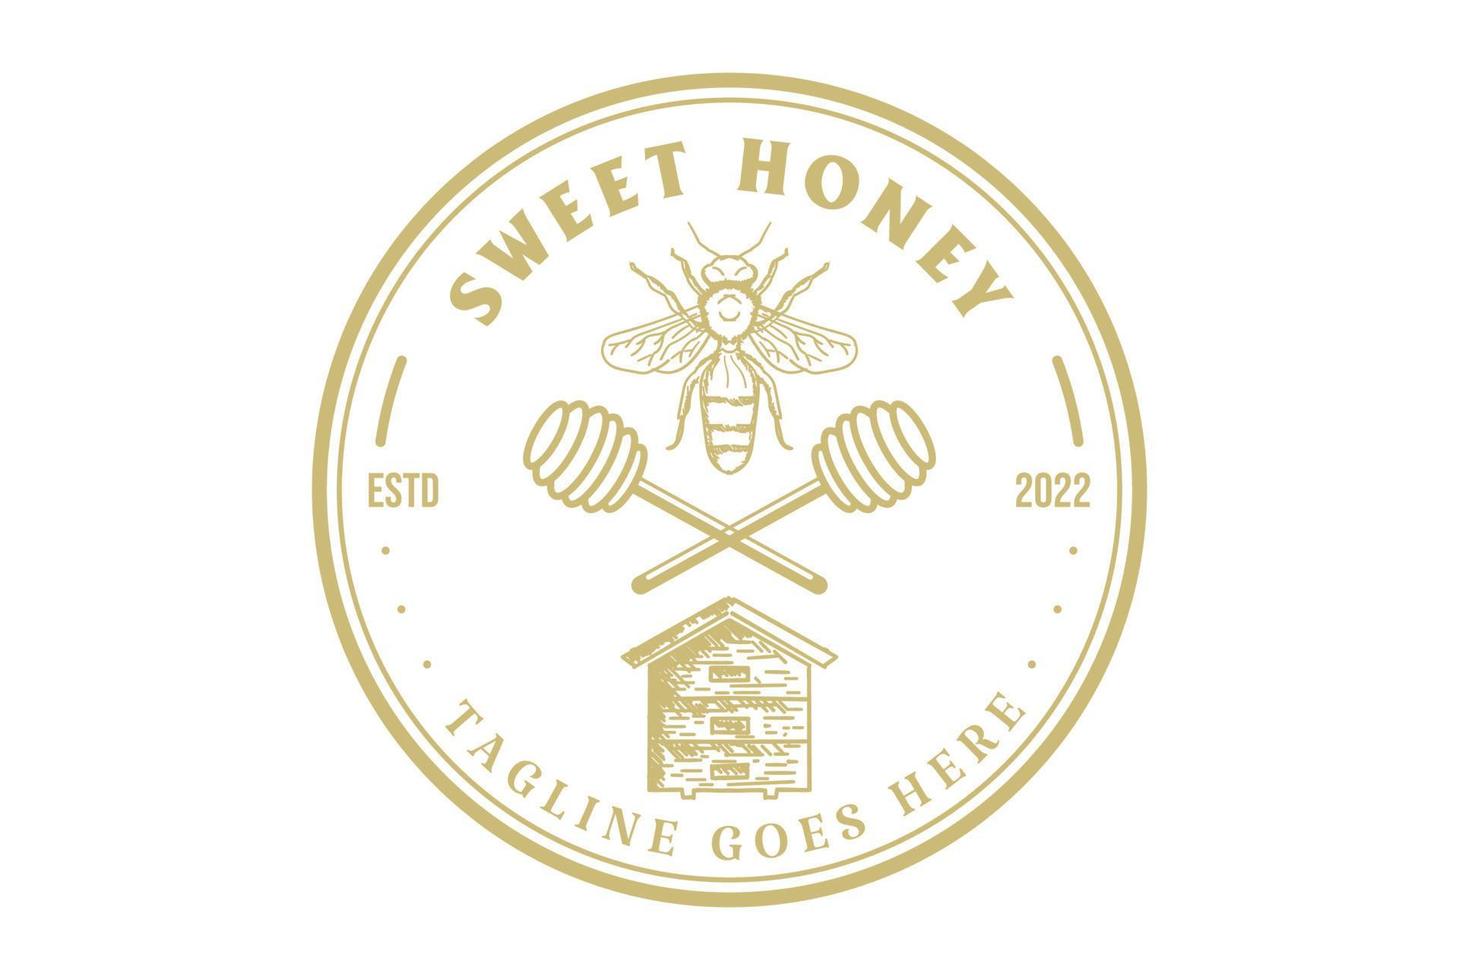 kreisförmiger runder süßer honigbienenbauernhof abzeichen emblem label logo design vektor